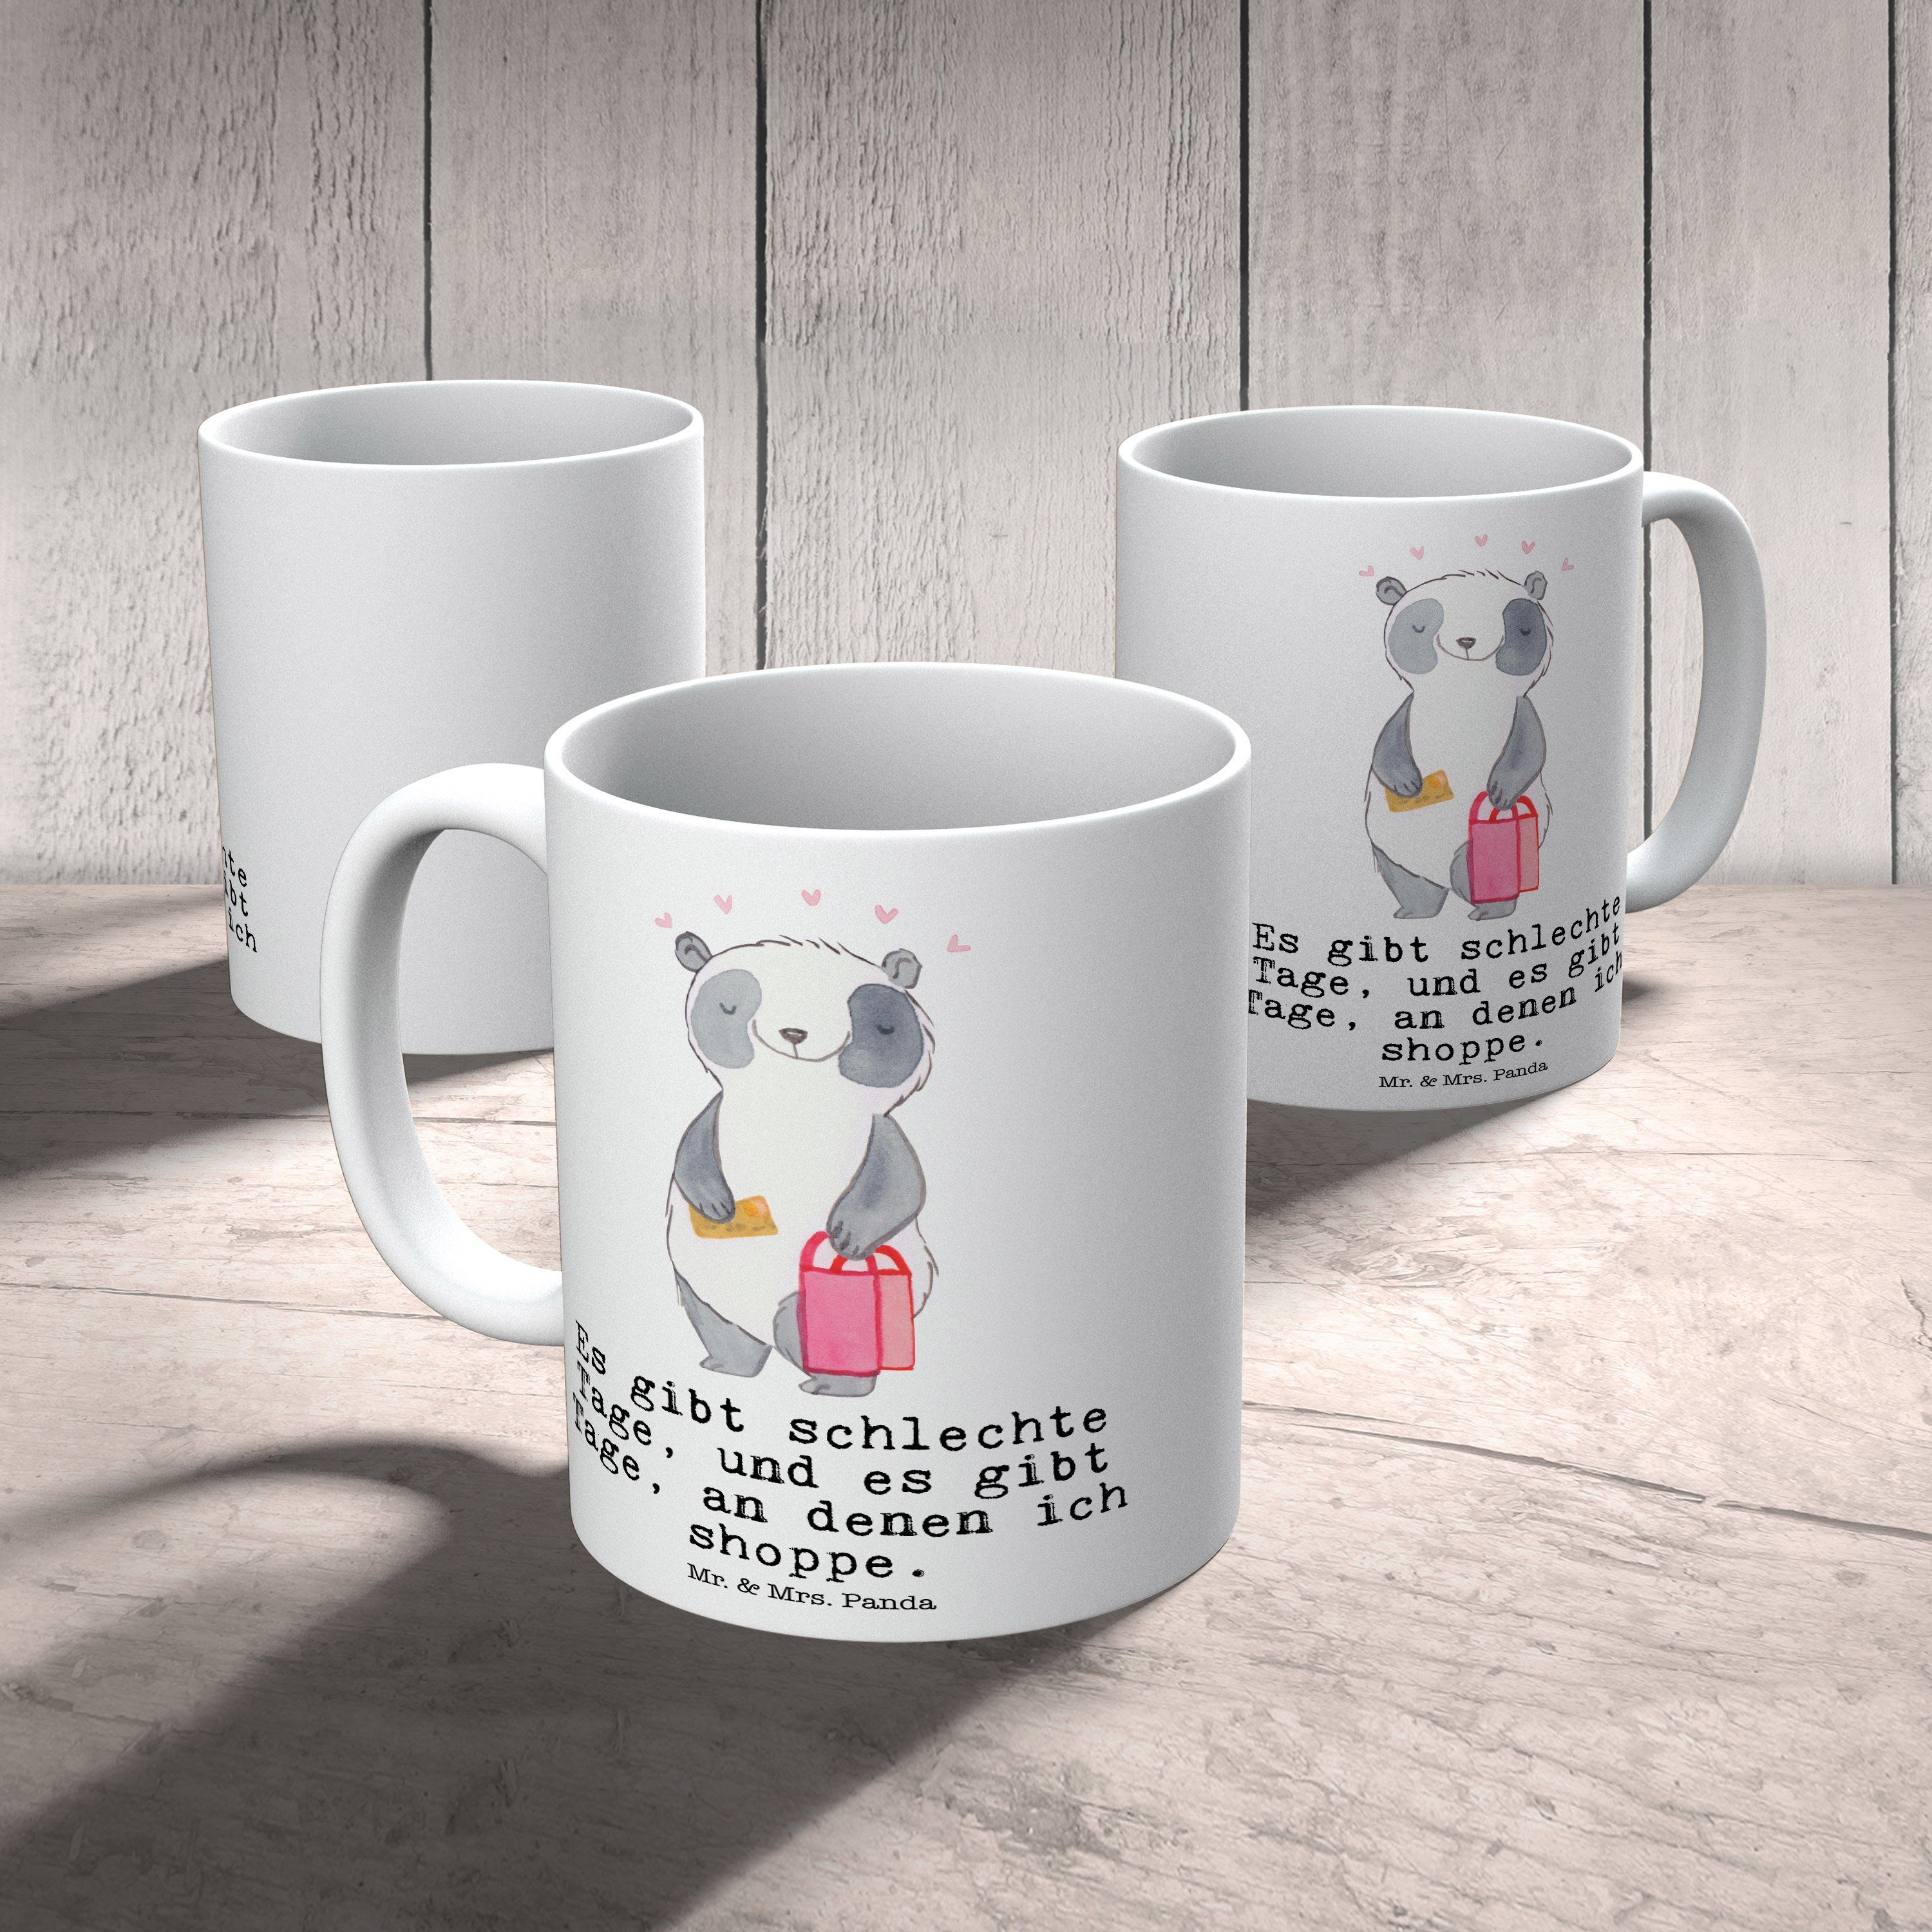 Keramik & Danke, Panda Tasse Mr. Tage einkaufen, Mrs. Weiß Panda Shopping - Geschenk, Auszeichnung, -